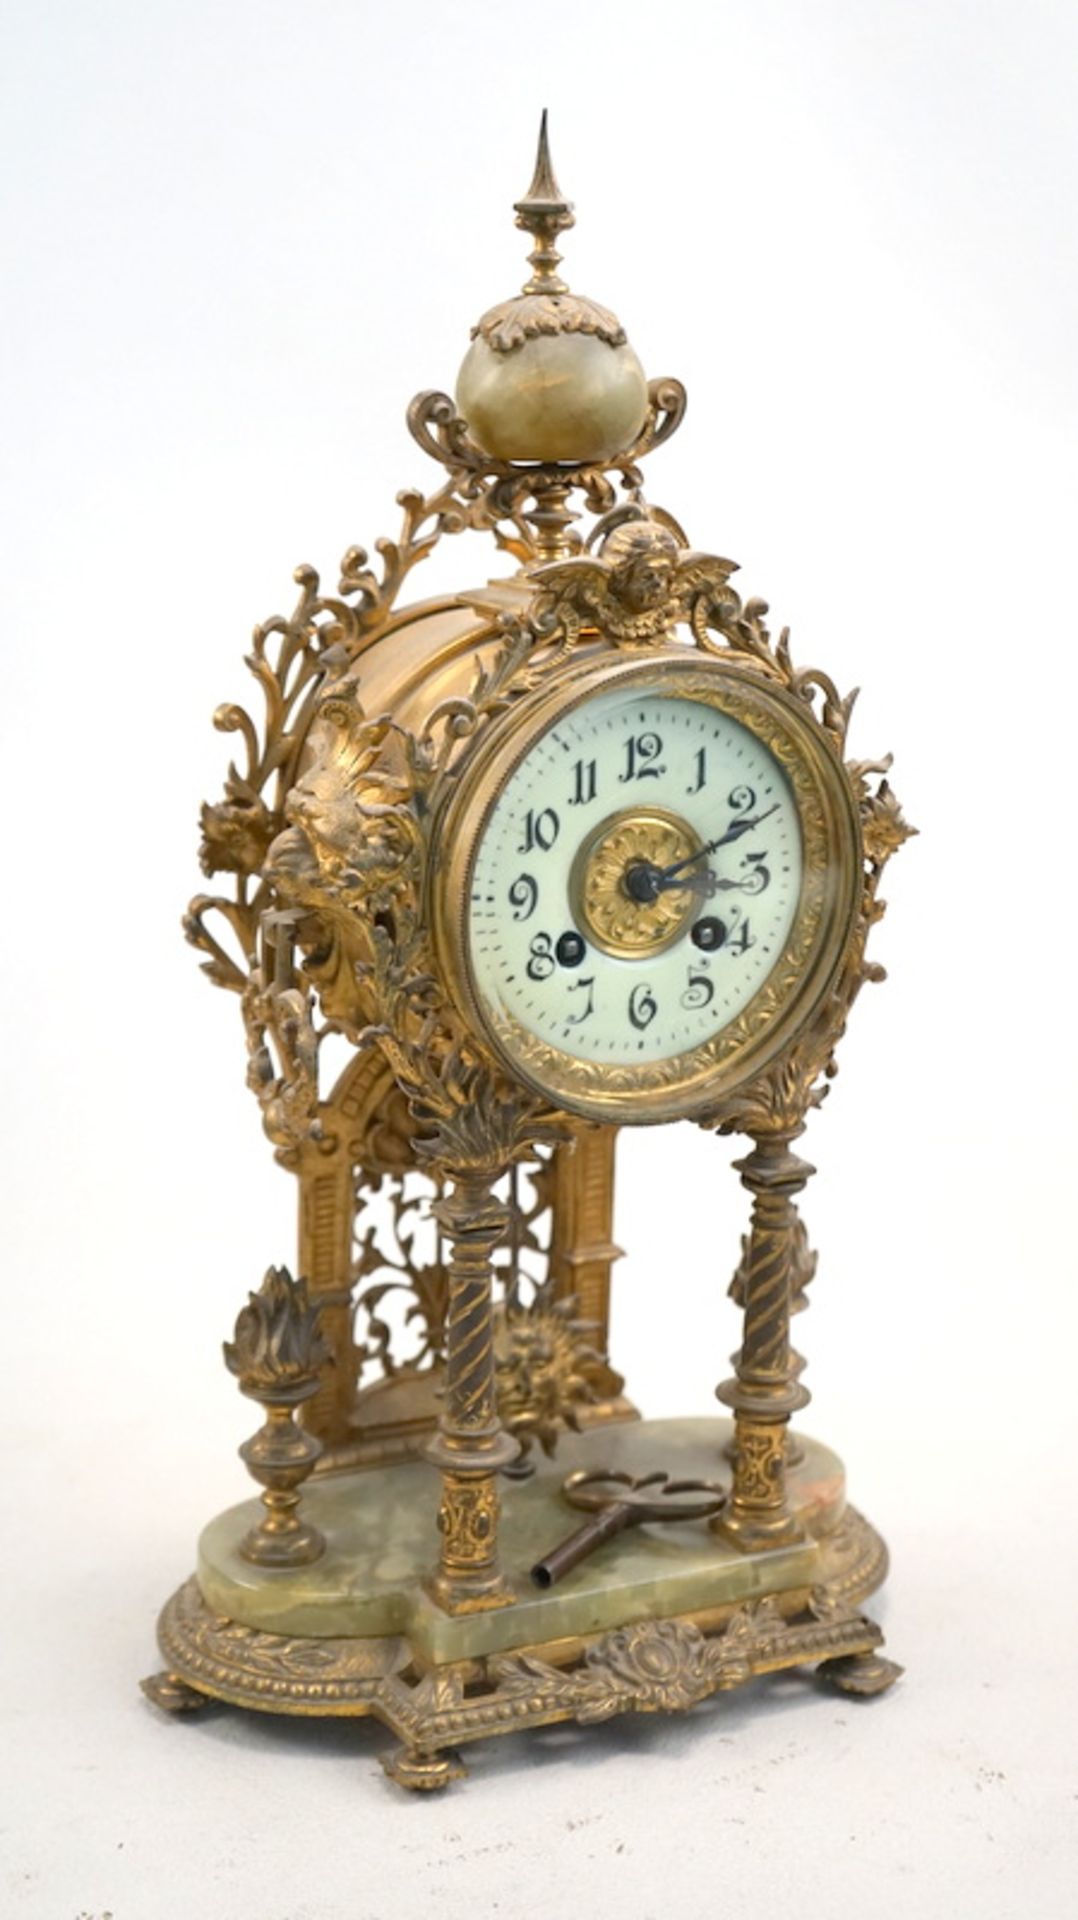 Lenzkirch, Aktiengesellschaft für Uhrenfabrikation: Kaminuhr im Historistischem Stil, um 1900